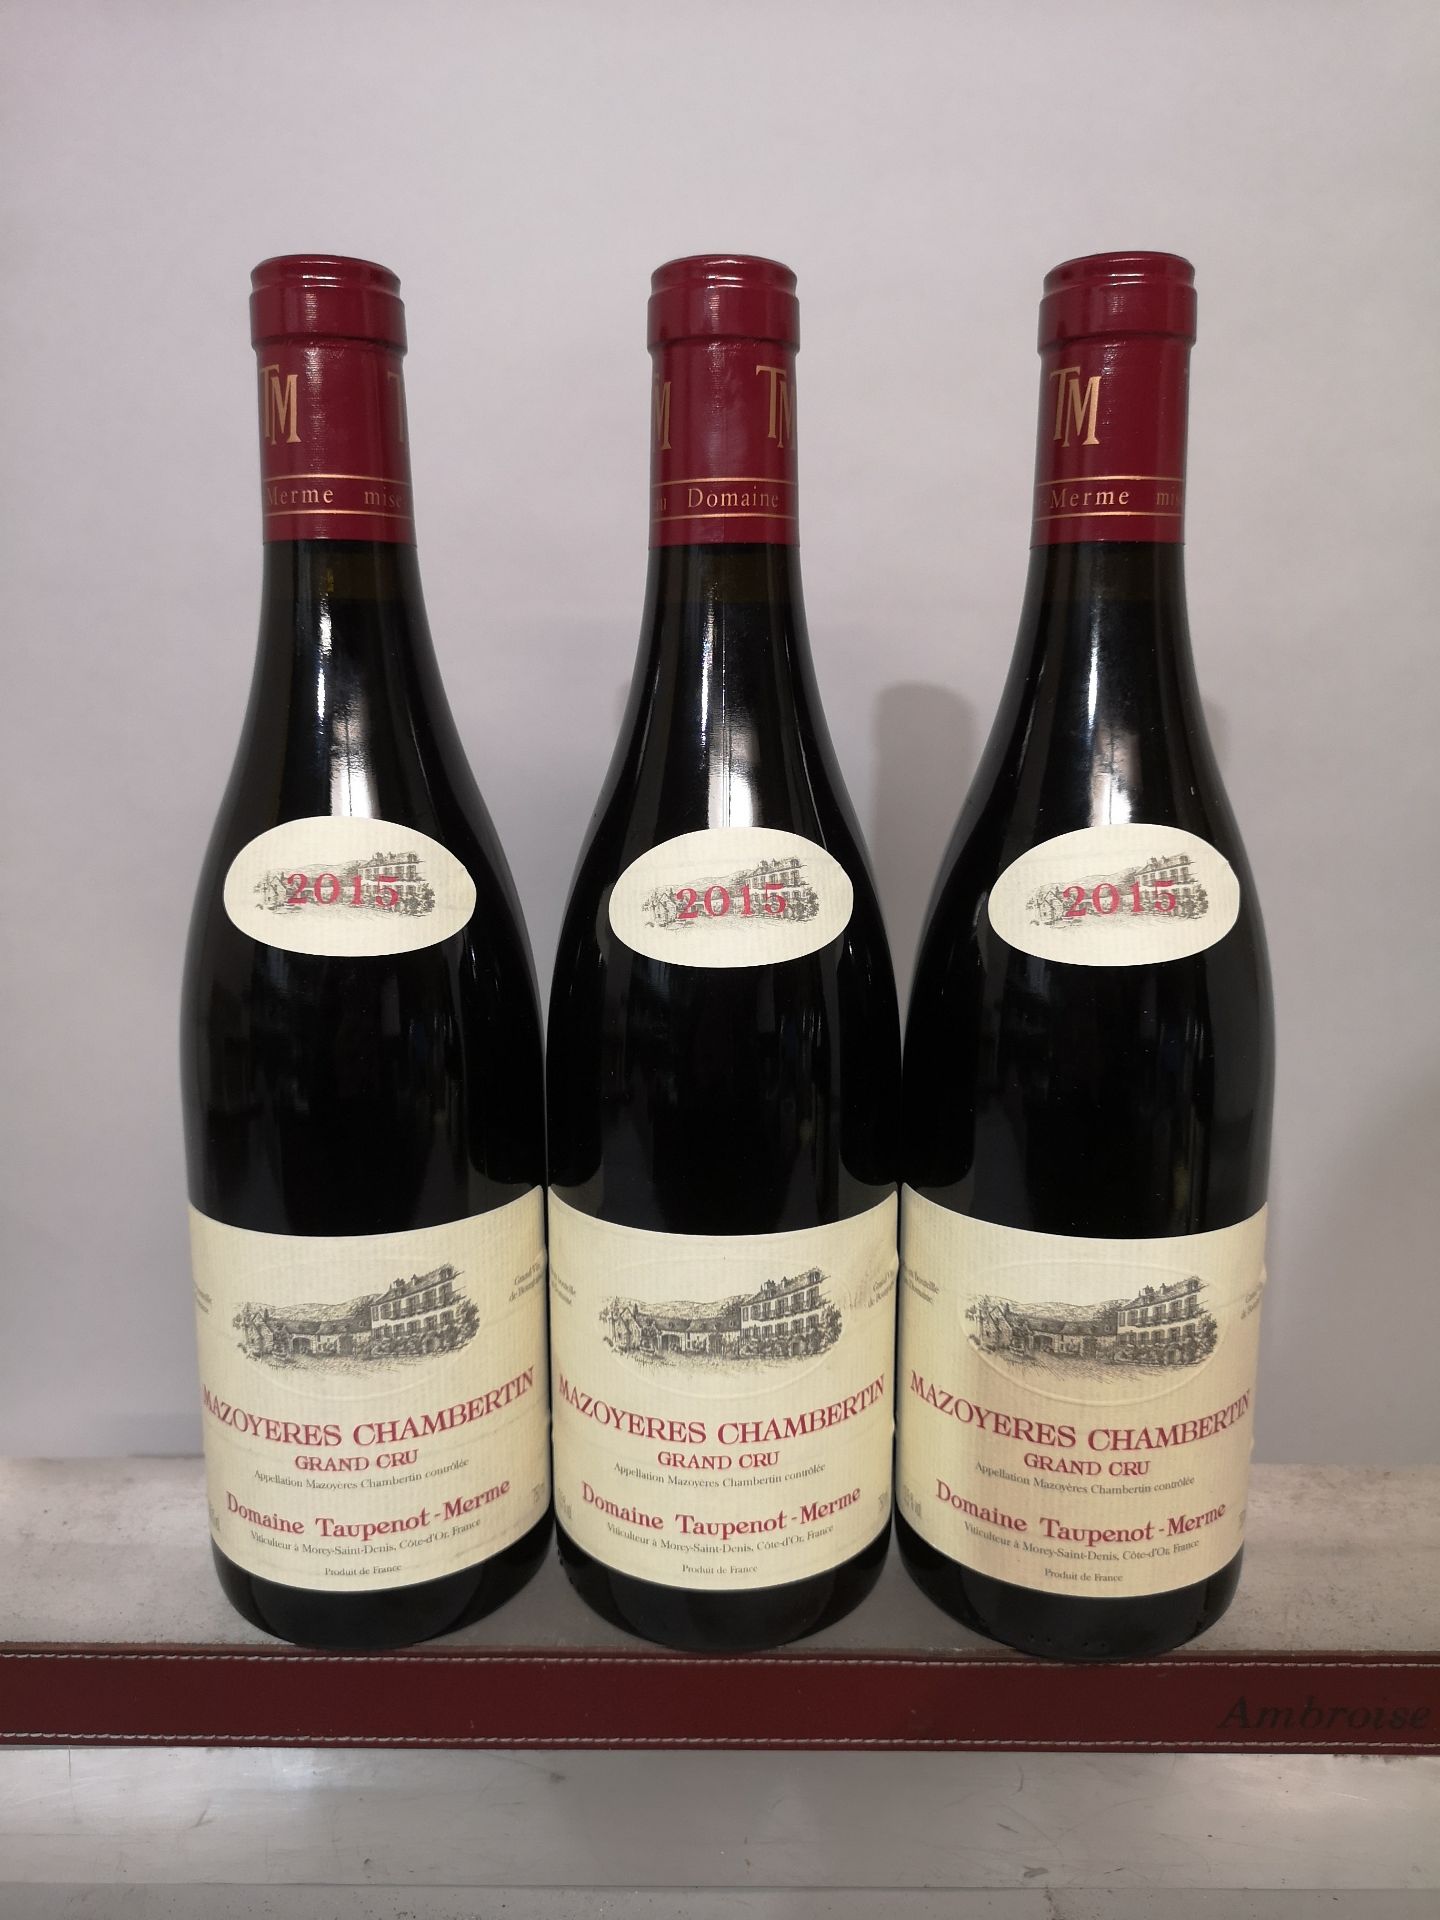 3 Mazoyeres Chambertin Grand Cru - Taupenot Merme 2015 bottles.